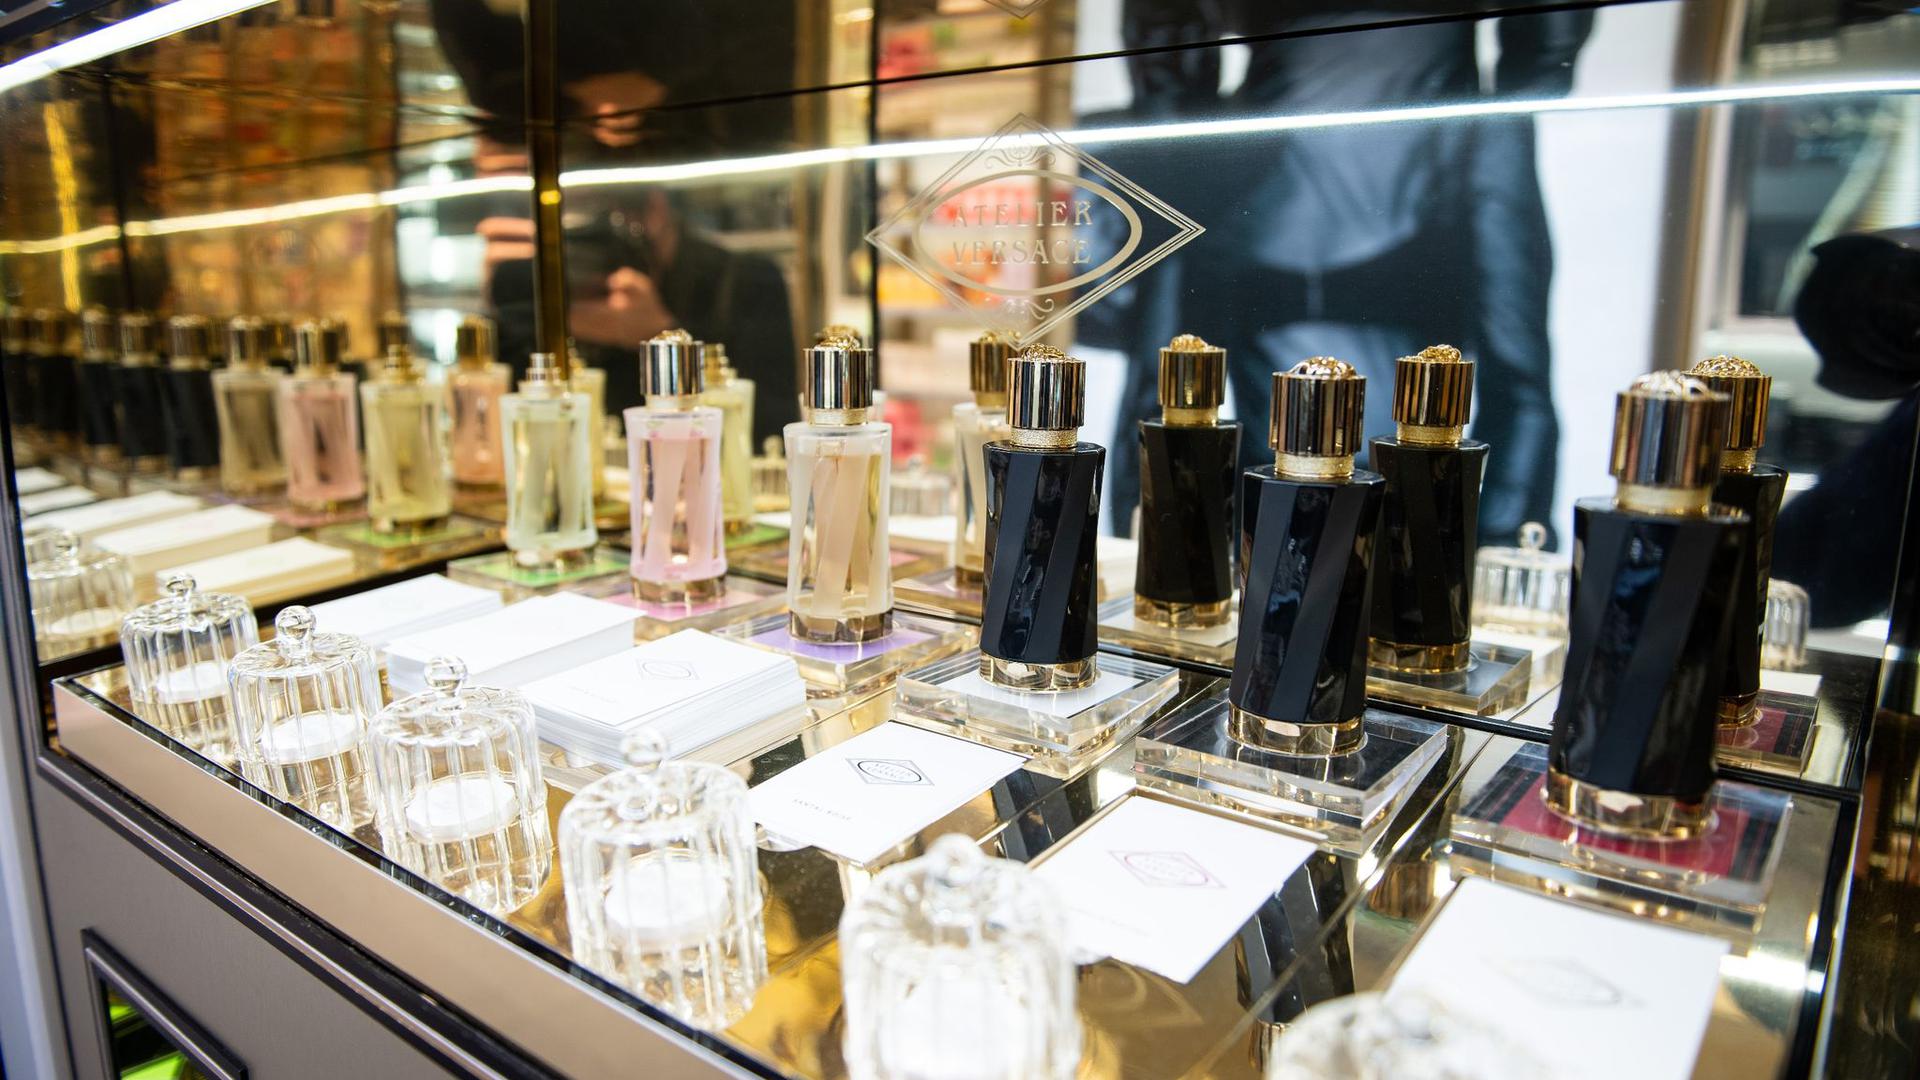 Parfüms und Kosmetika sind wieder beliebter: Mit der auslaufenden Pandemie kann Douglas aufatmen.